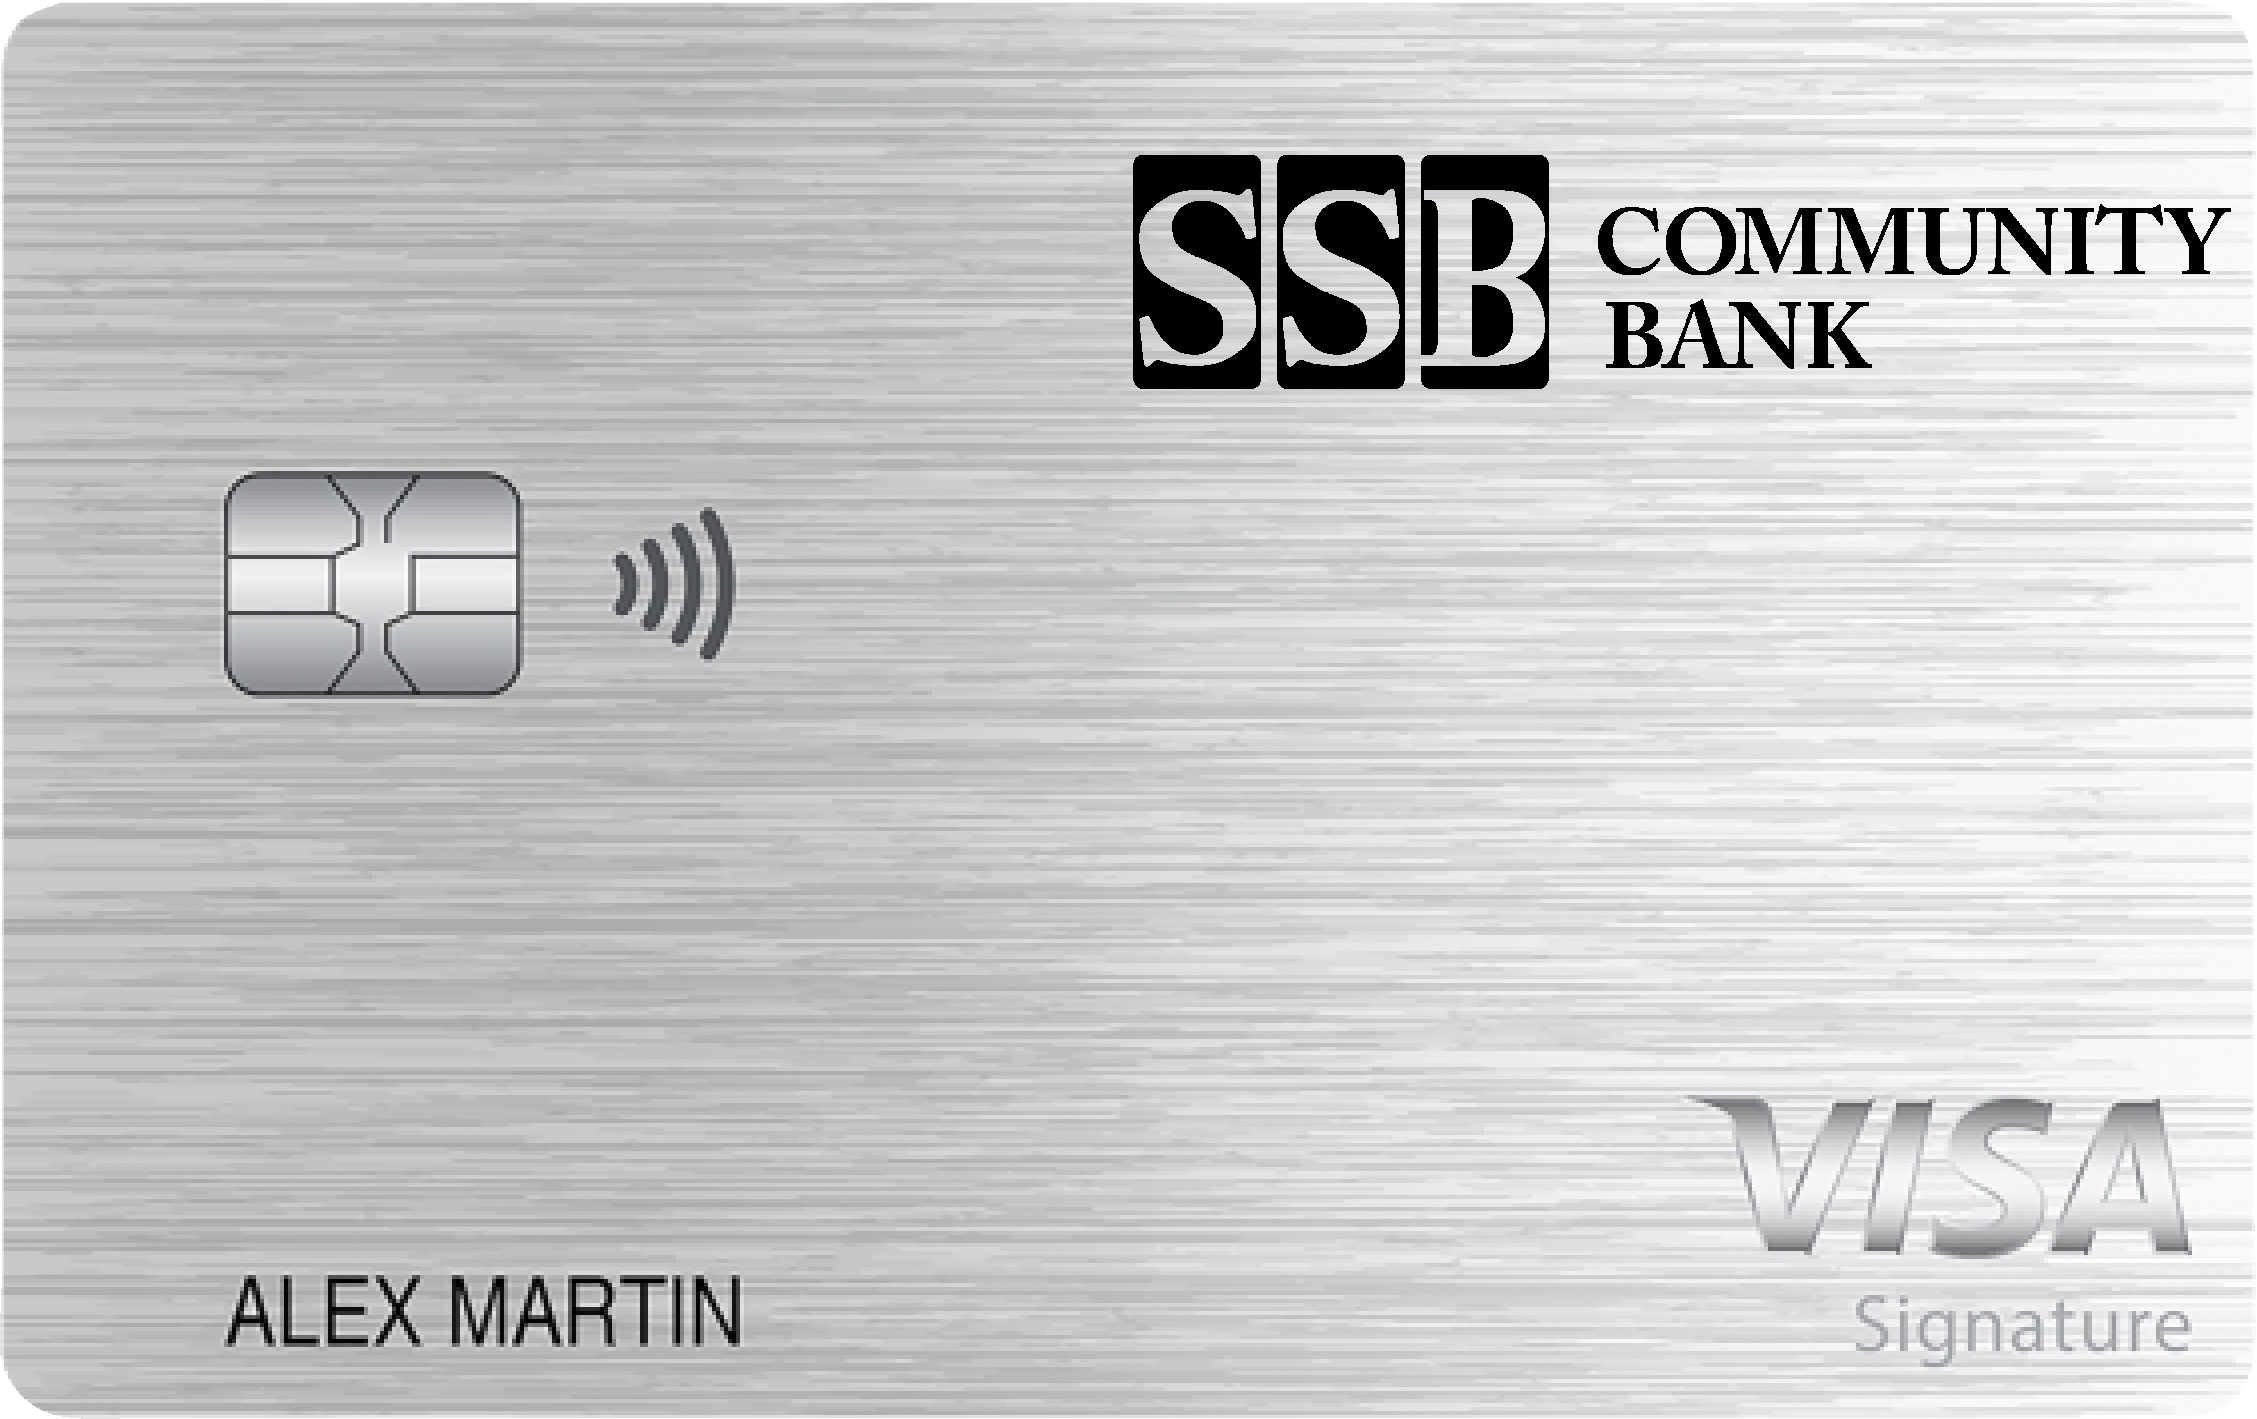 SSB Community Bank Everyday Rewards+ Card